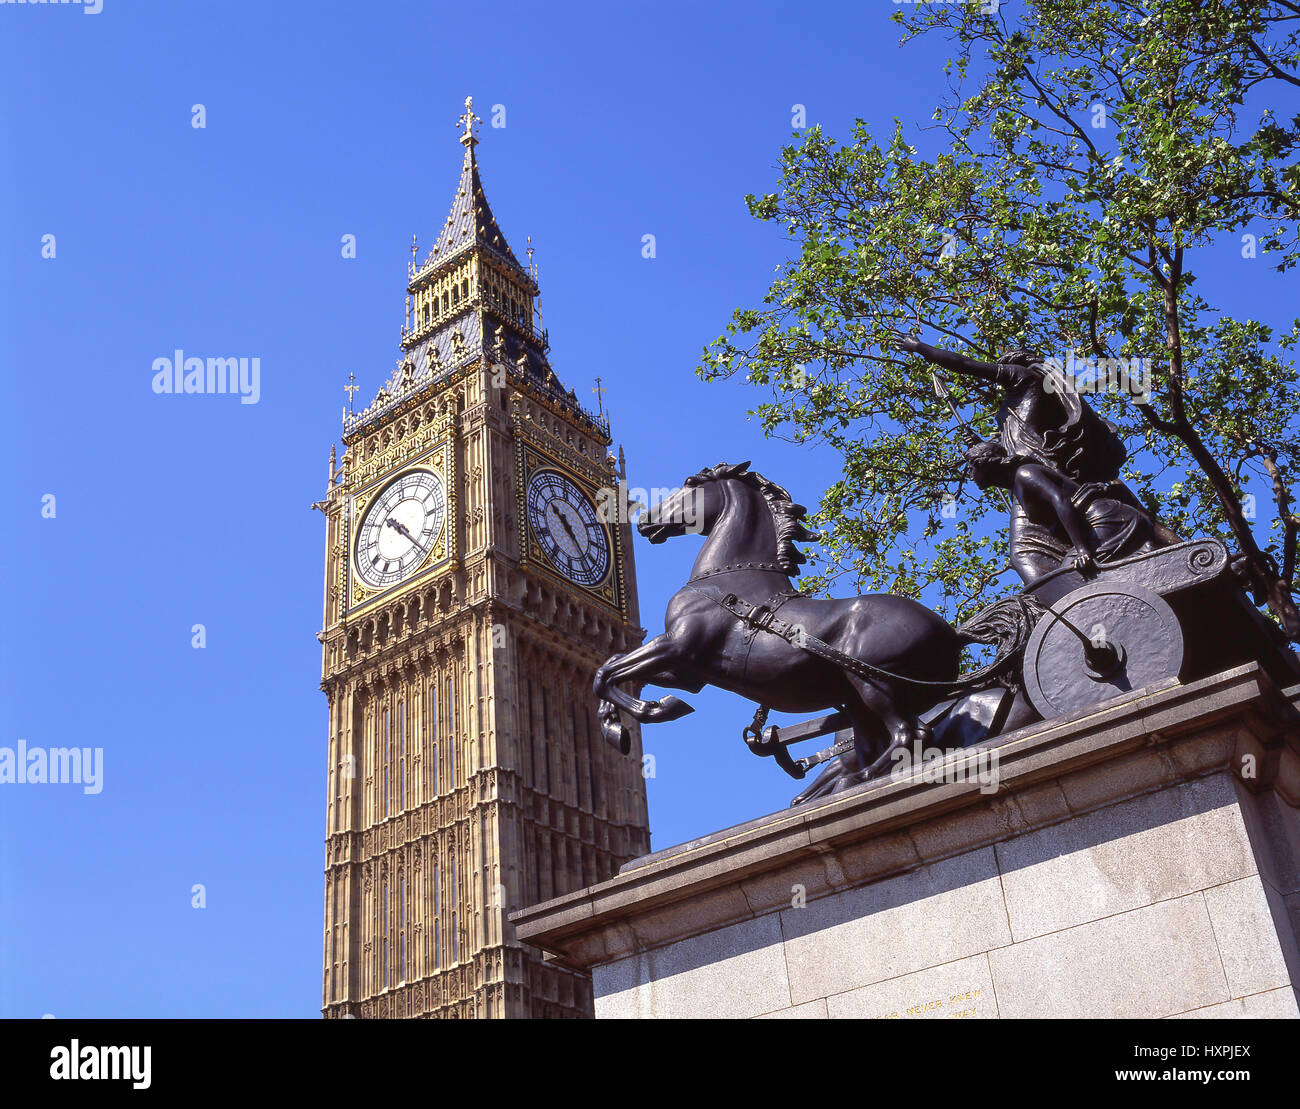 Big Ben tour de l'horloge et Statue de Boudicca Westminster Bridge, City of westminster, Greater London, Angleterre, Royaume-Uni Banque D'Images